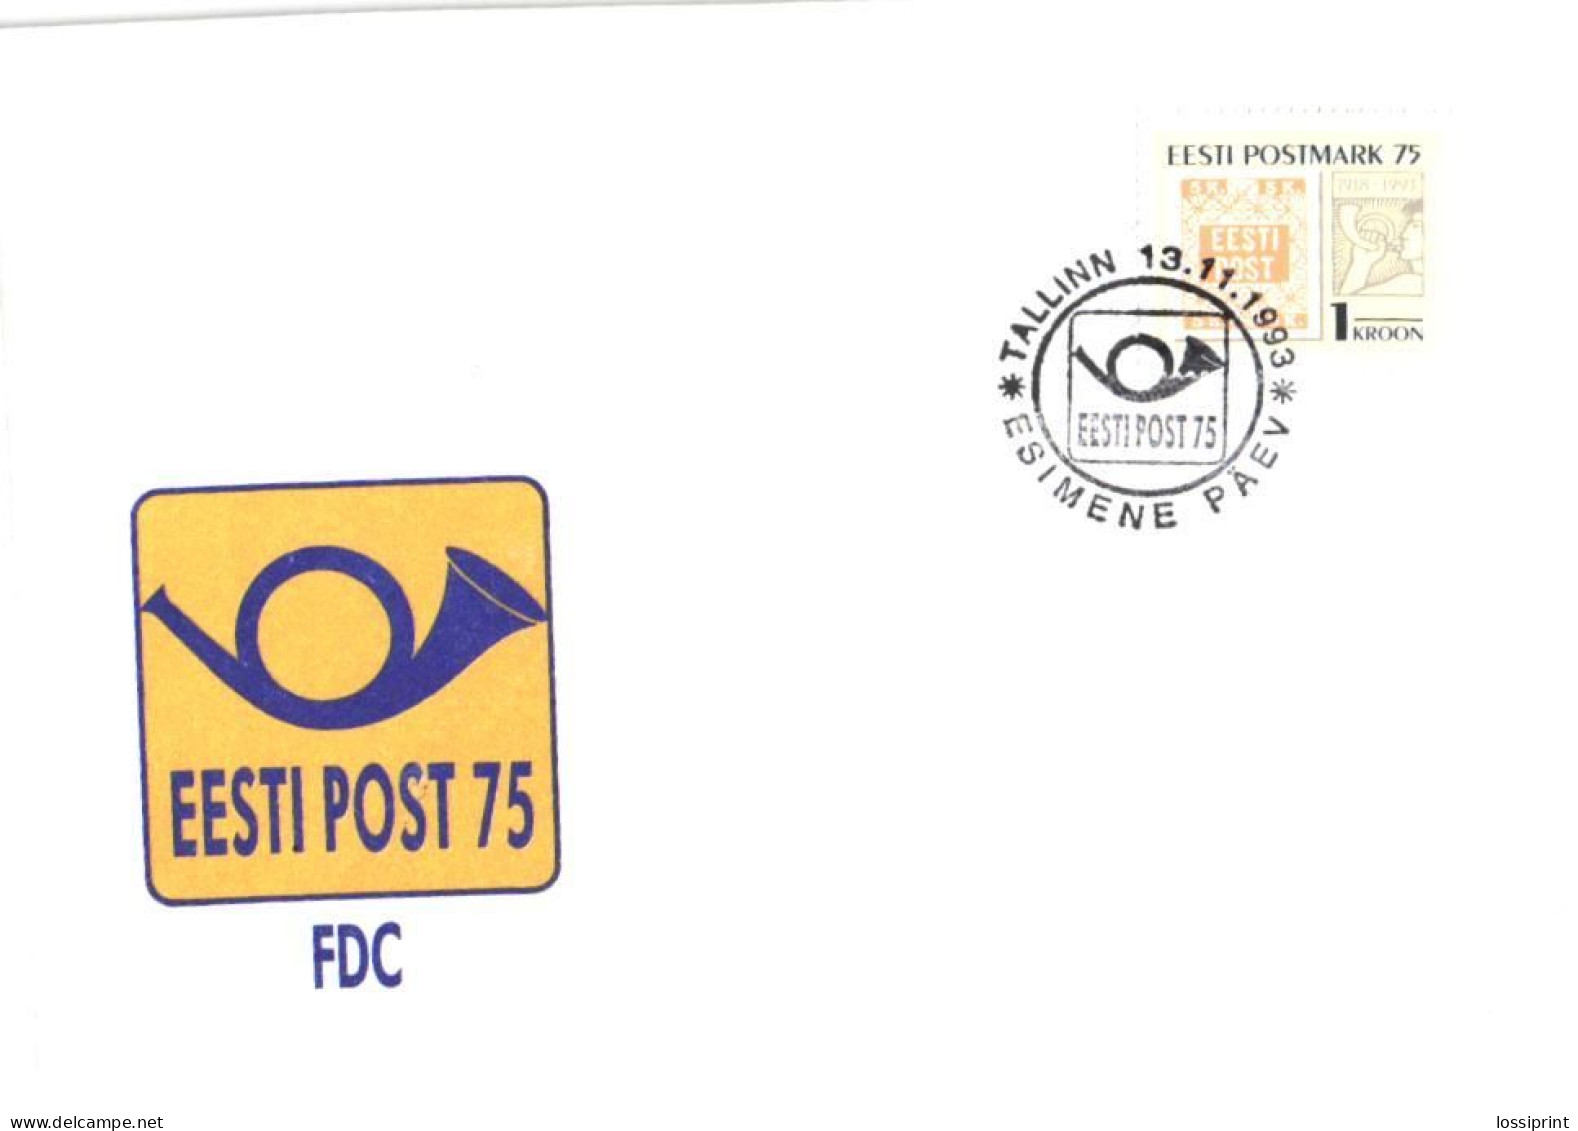 Estonia:FDC, Estonian Postal Stamp 75, 1993 - Estonie